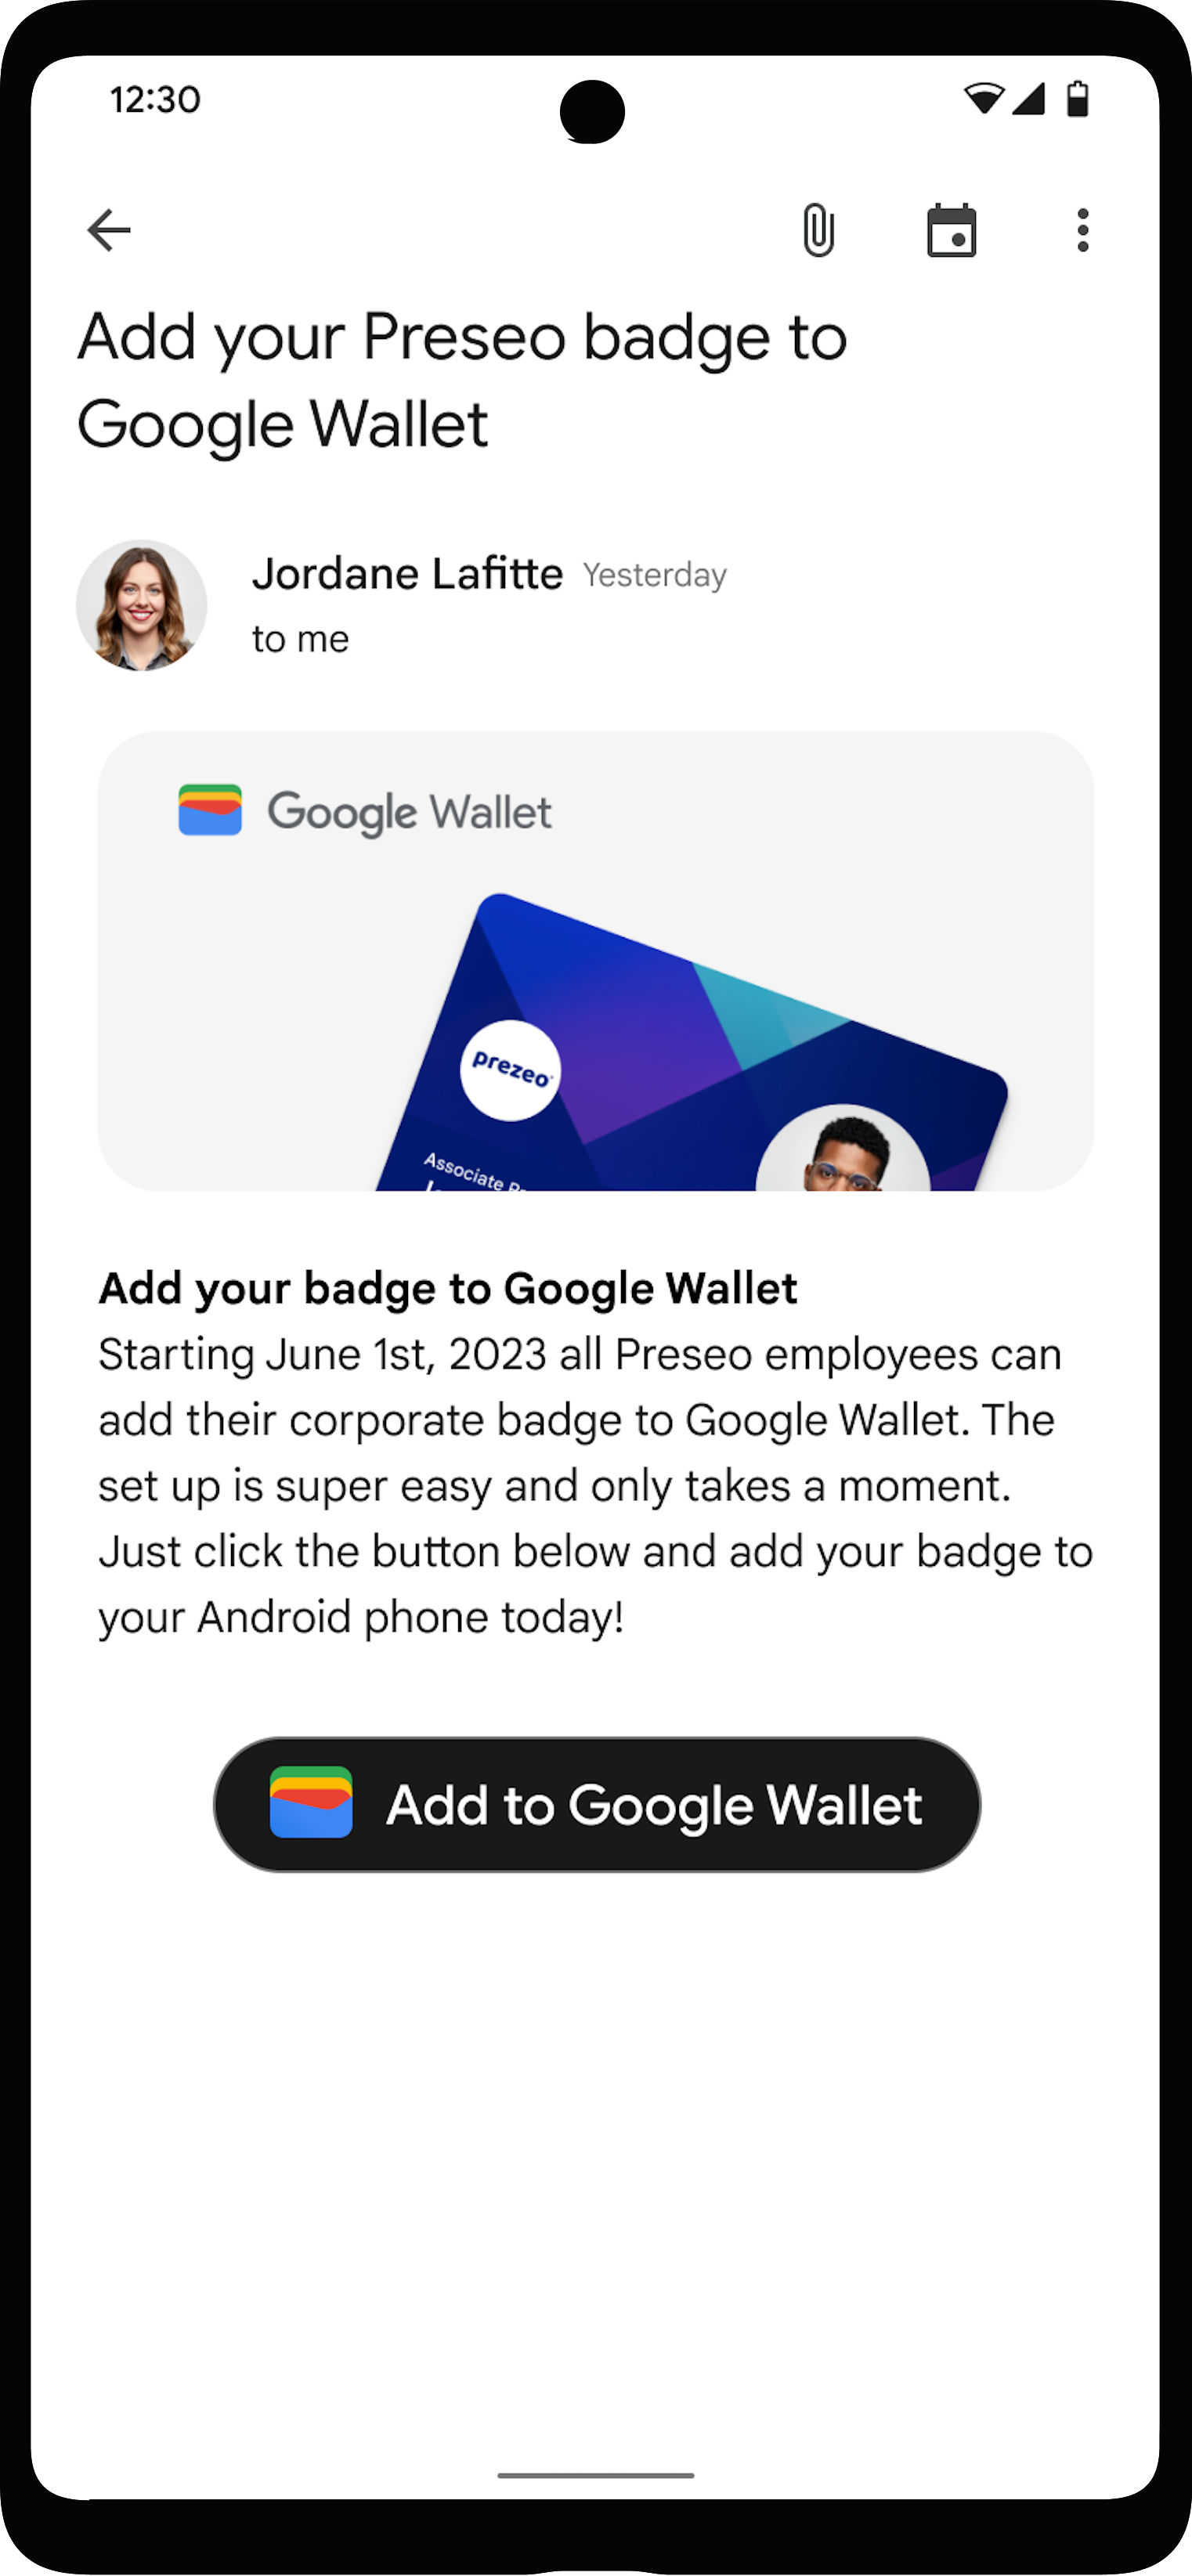 「新增至 Google 錢包」按鈕位於使用者帳戶應用程式中的顯眼位置。